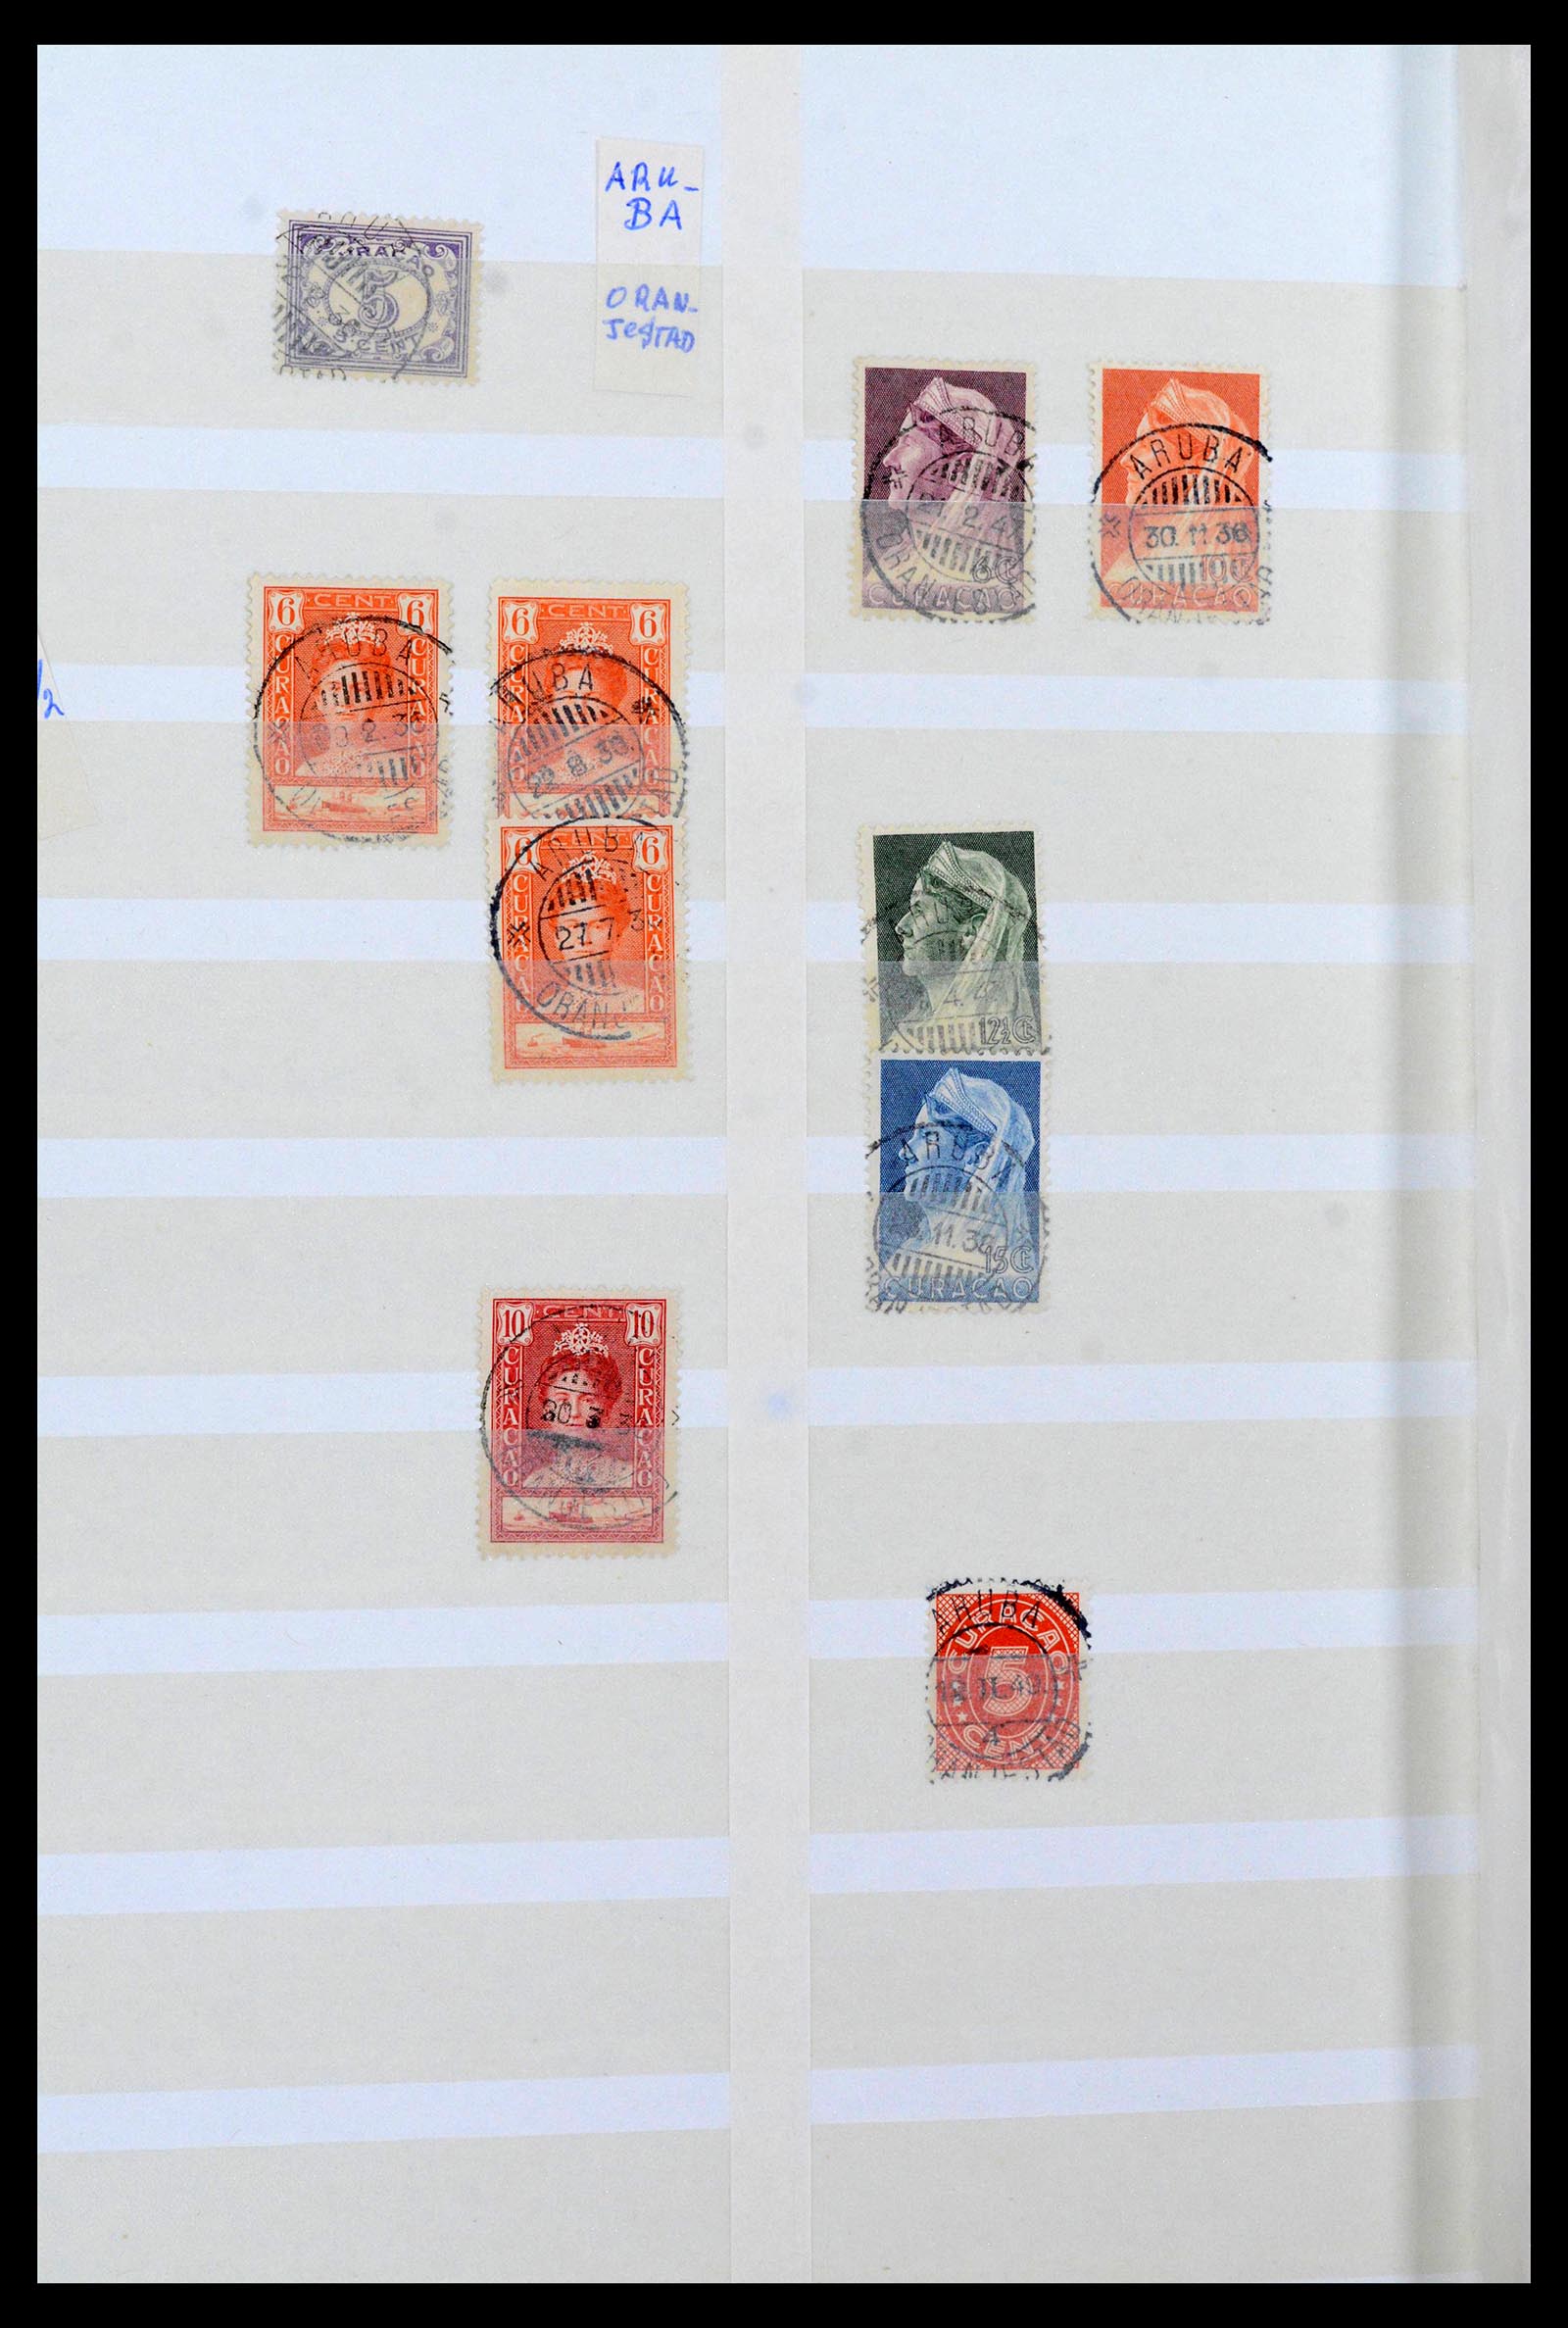 39541 0005 - Postzegelverzameling 39541 Curaçao/Antillen stempels 1873-1970.